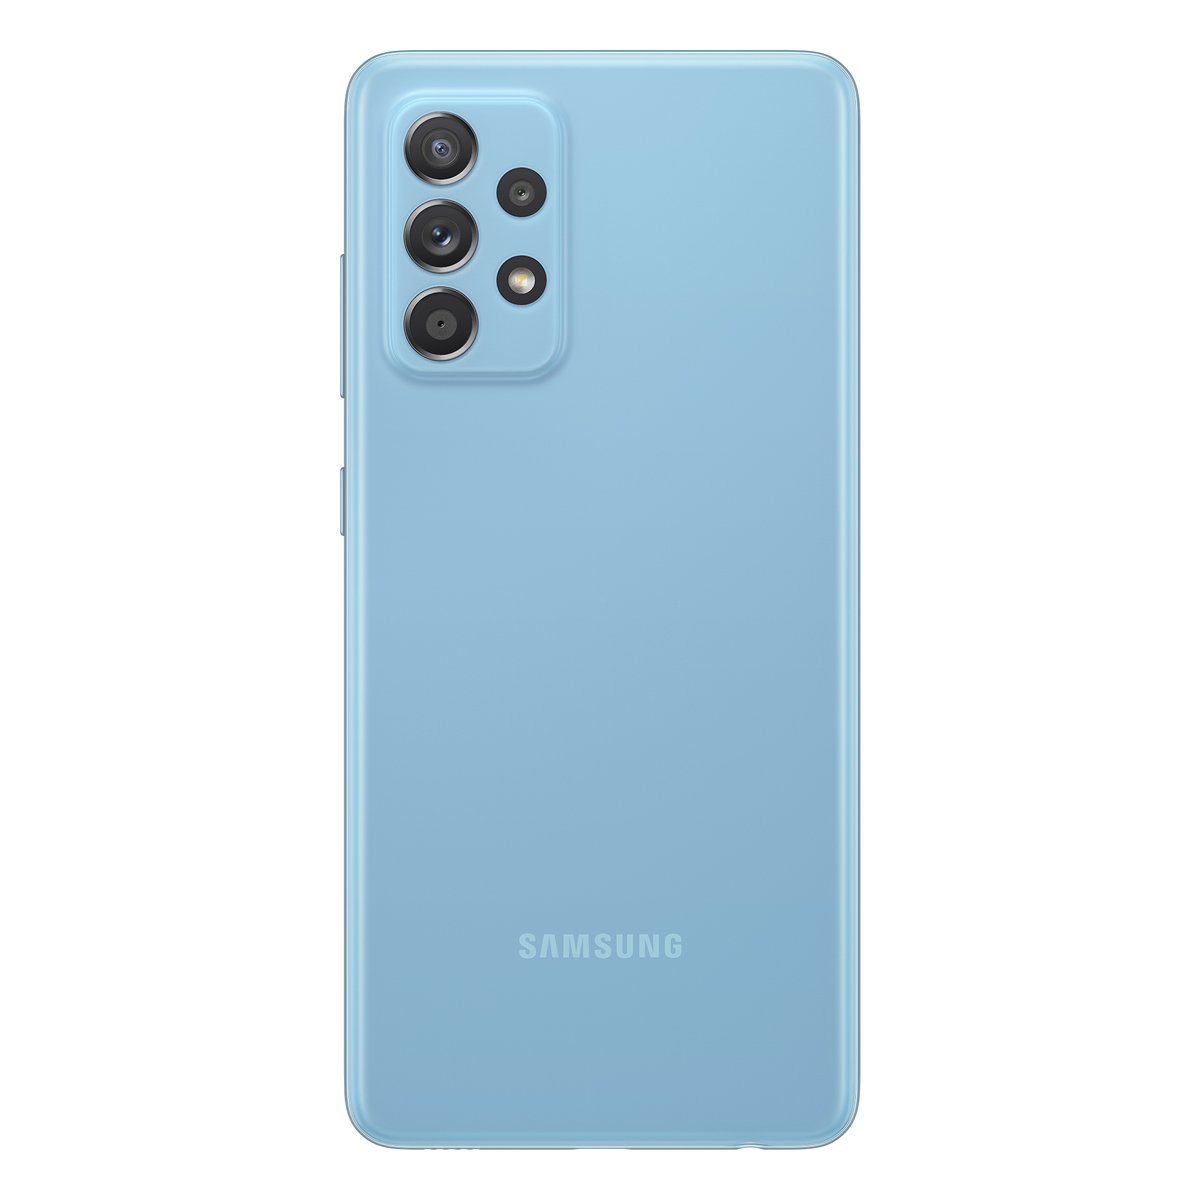 Samsung Galaxy A52-SMA526 128GB 5G Blue